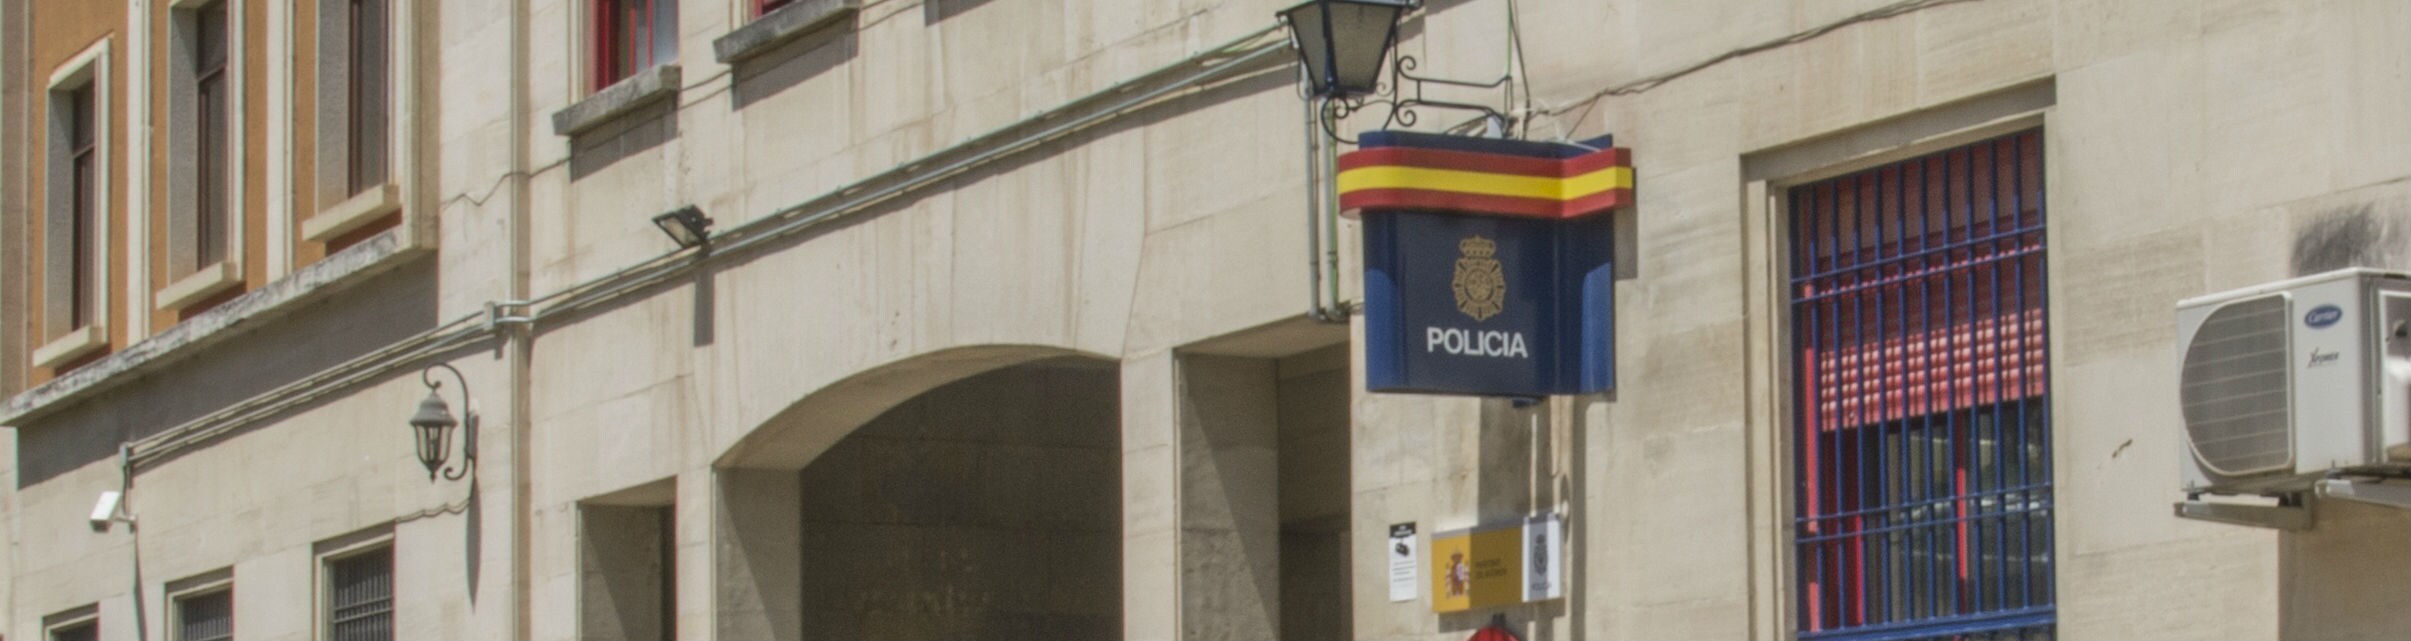 Sede de la Policía Nacional en Jaén.